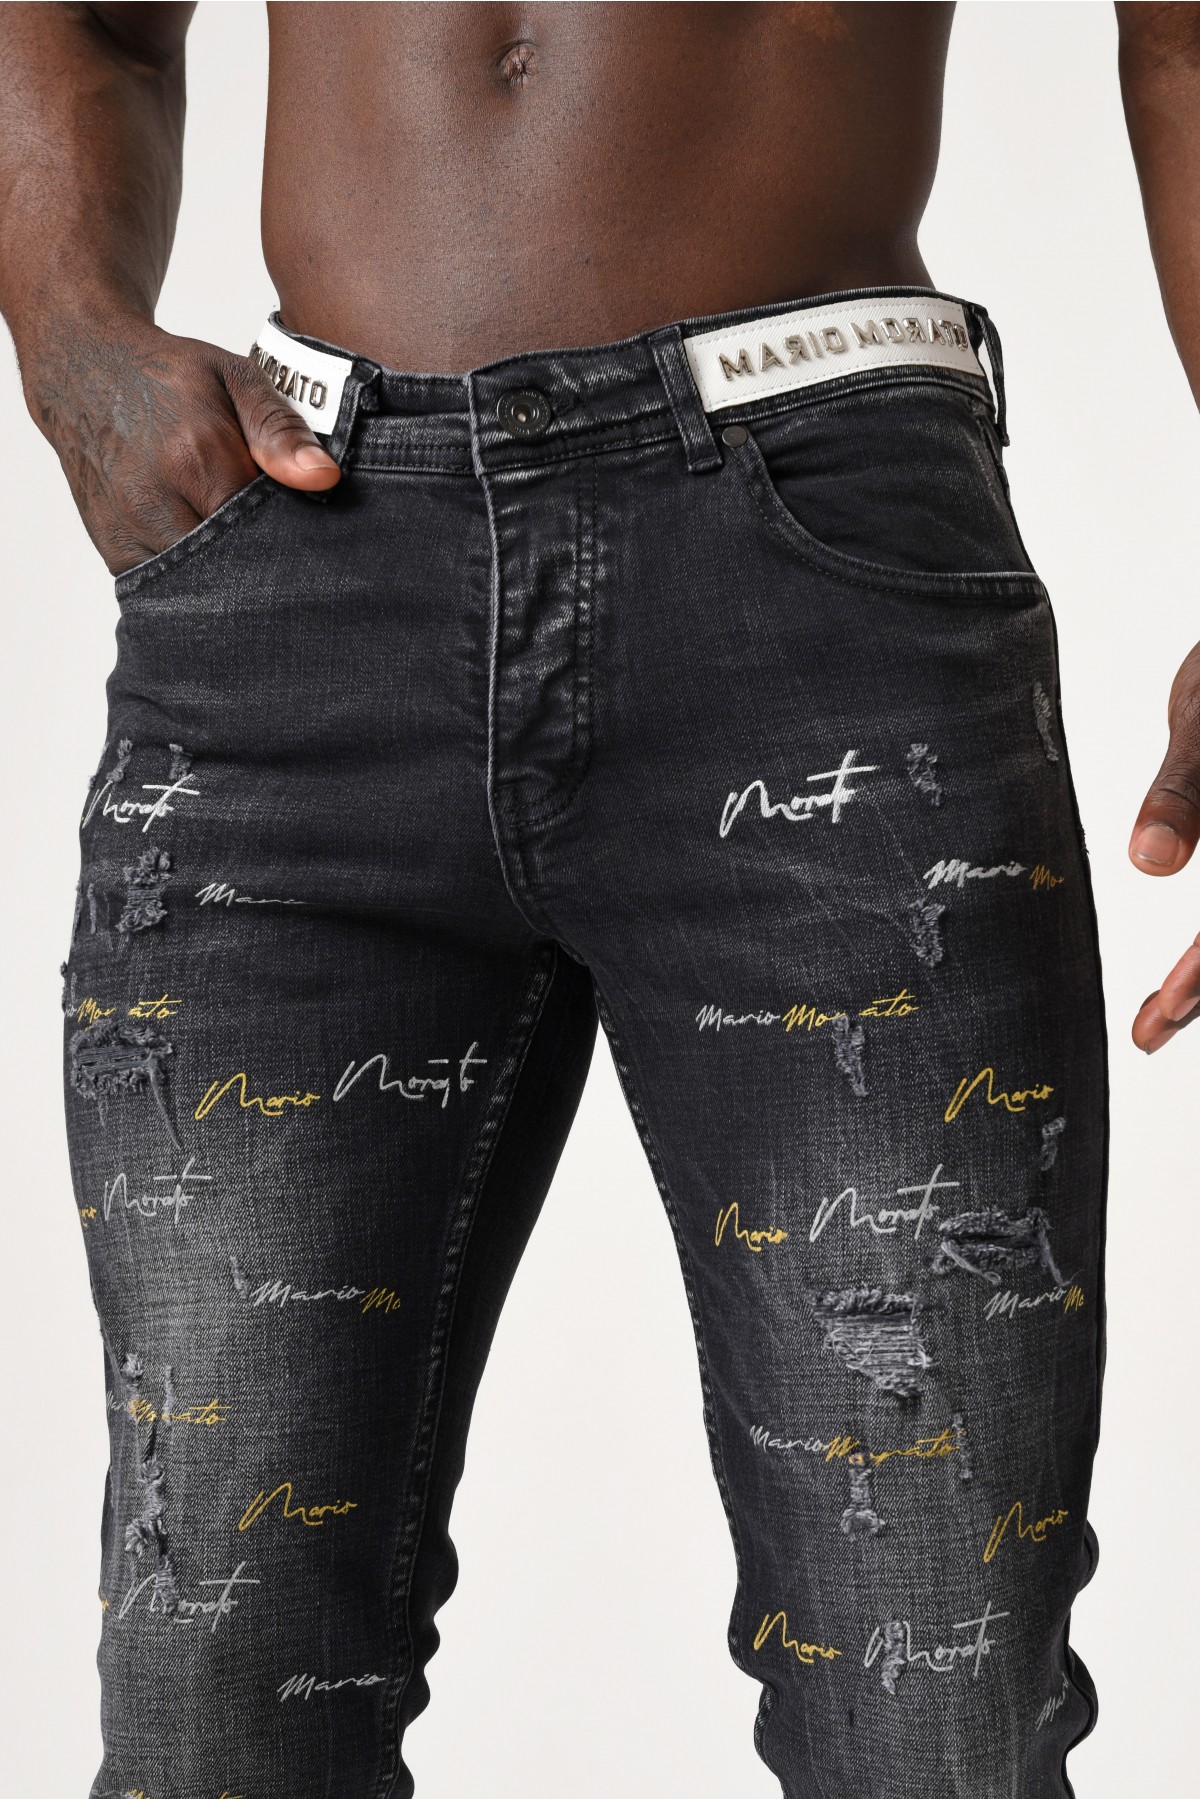 Erkek Denim Pantolon - Kemerde Gümüş Morato detaylı Paçalarda renkli baskılı - Koyu Gri